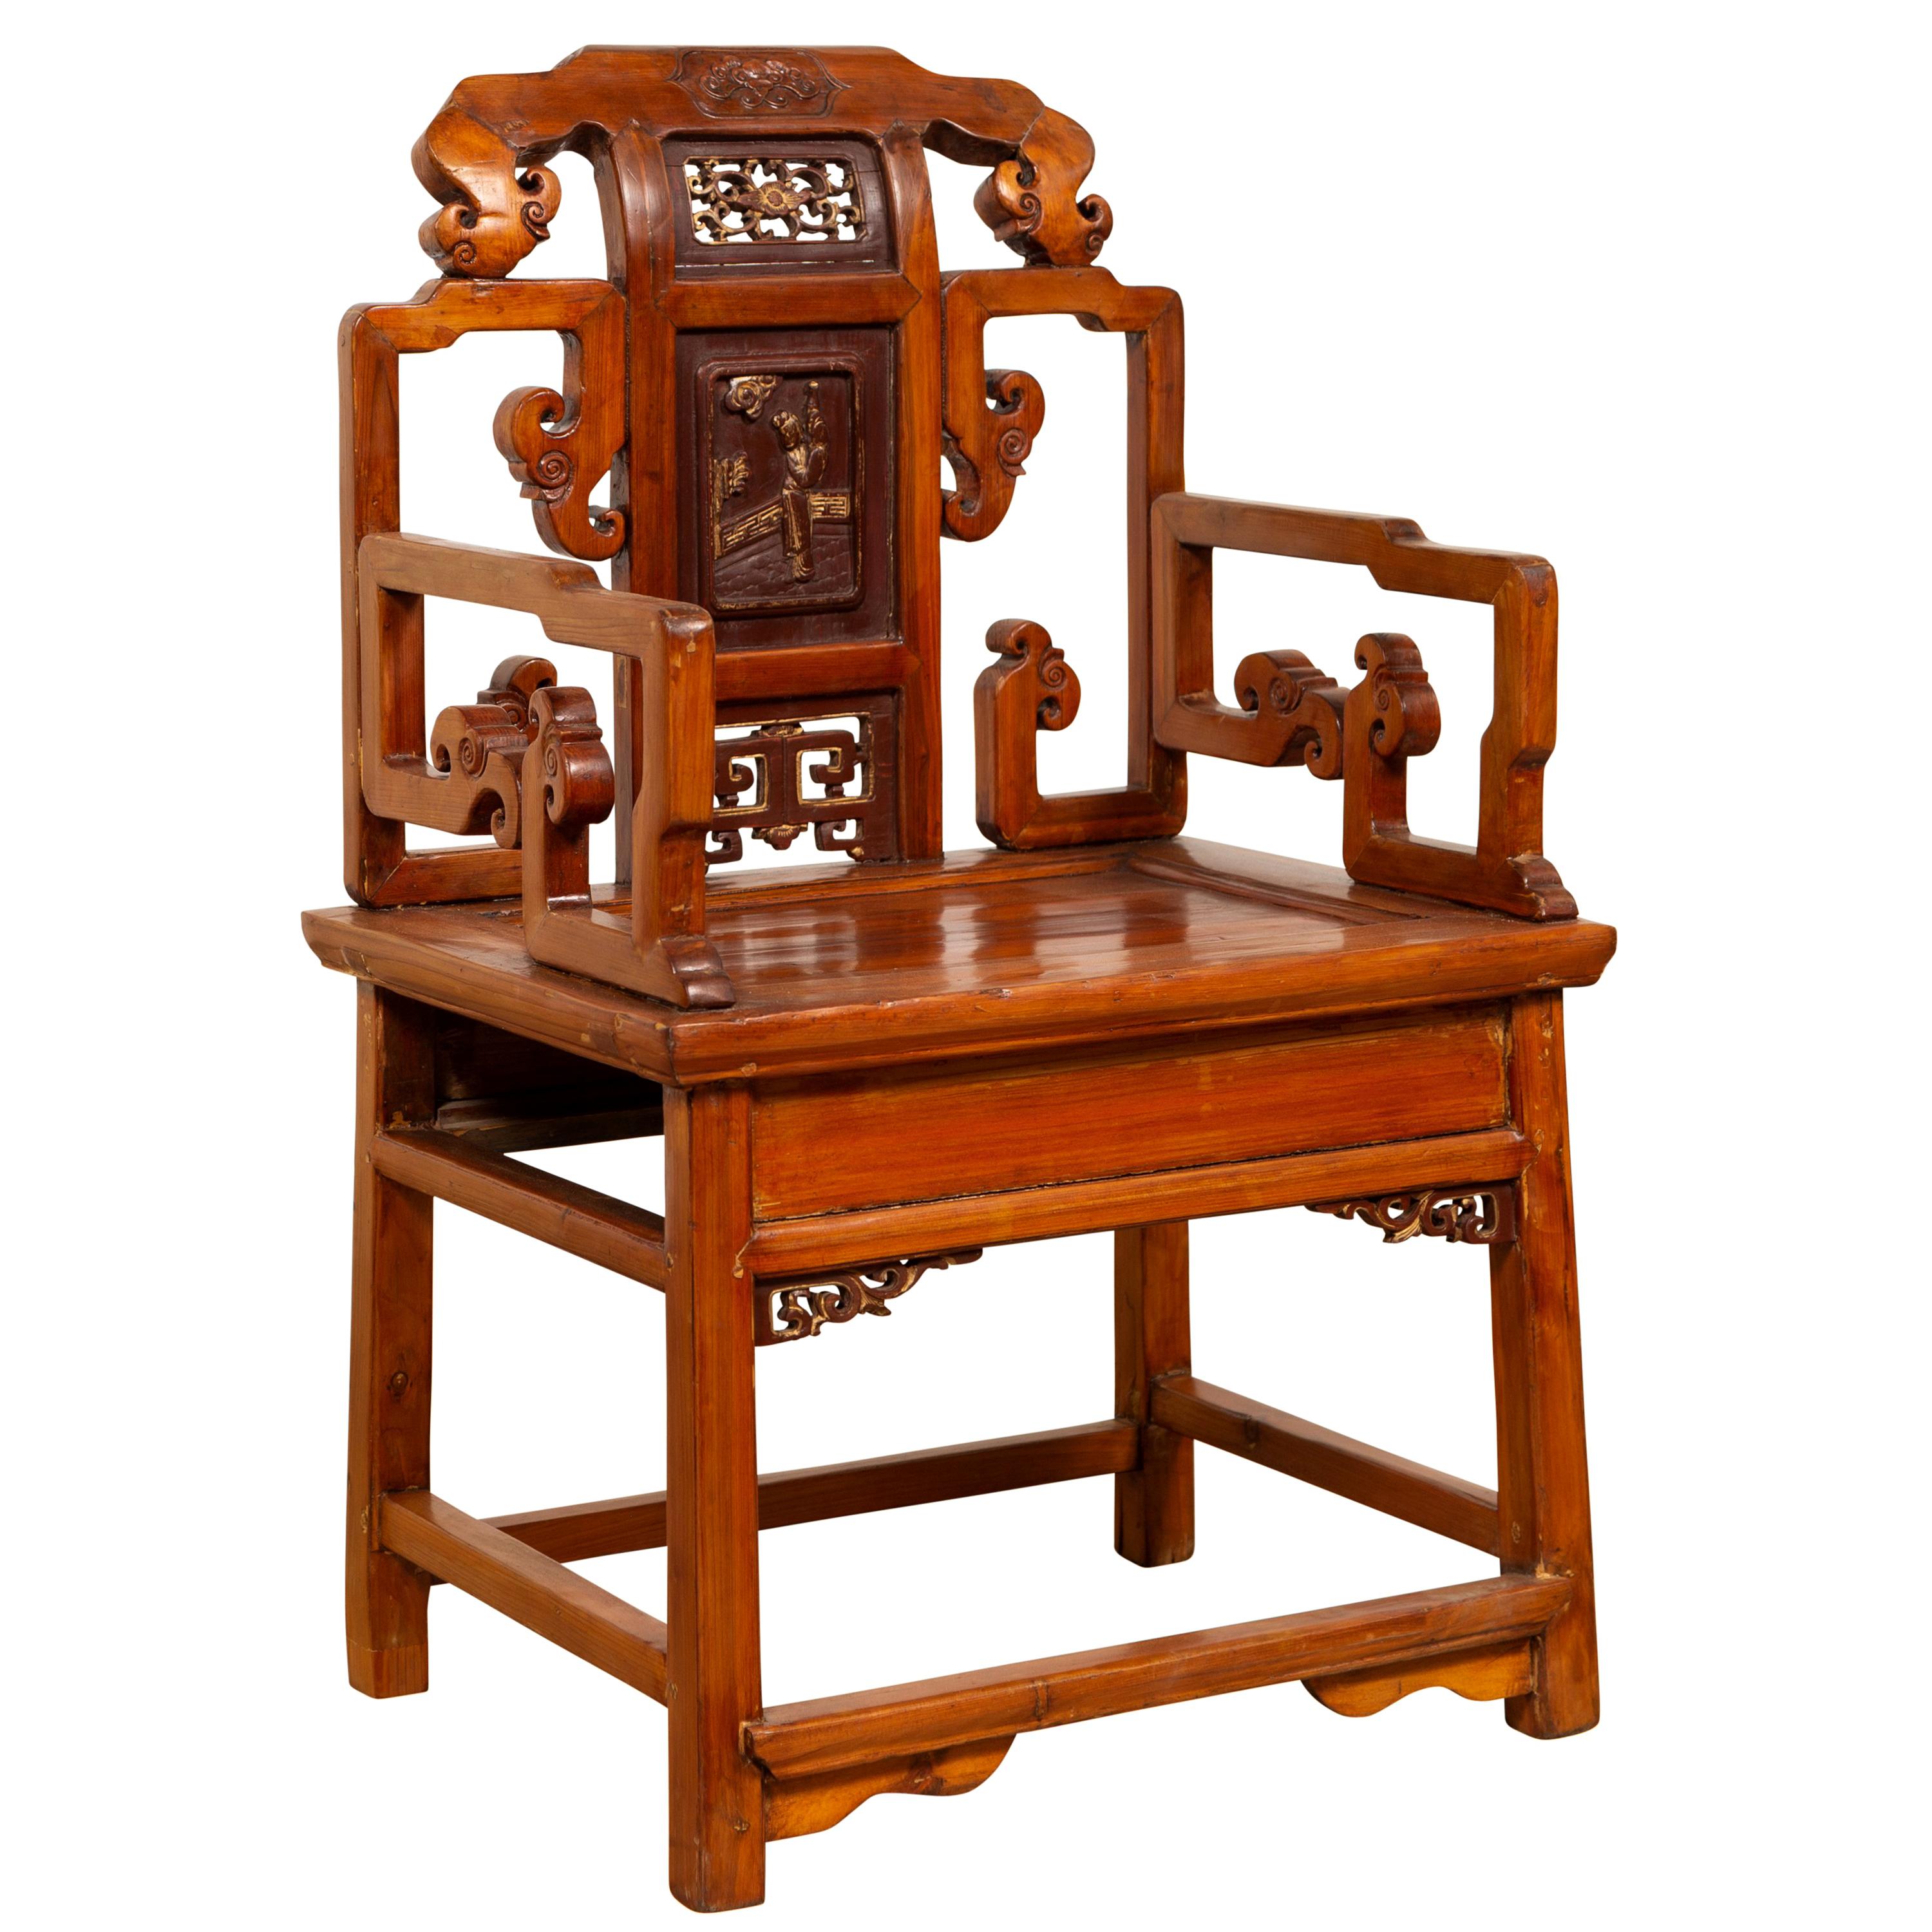 Ancienne chaise chinoise sculptée à la main, patine naturelle du Wood Wood, accents rouges et dorés